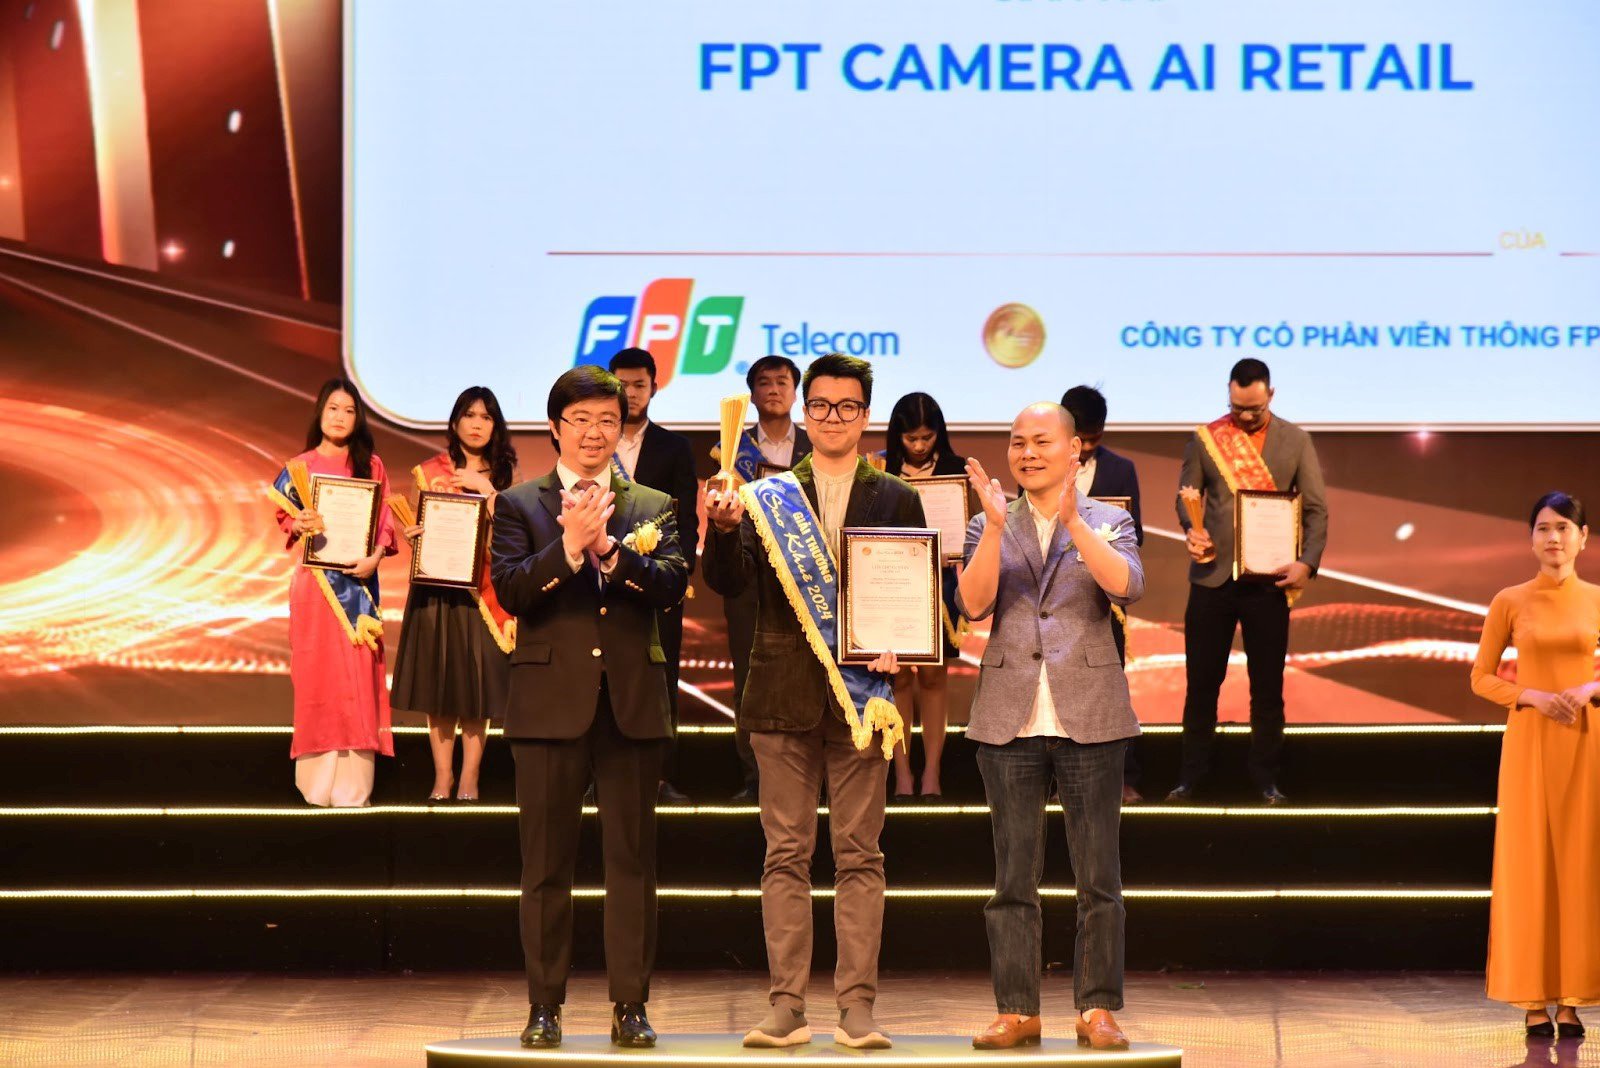 Ông Khưu Trí Trung - Phó phòng kinh doanh FPT Camera lên nhận giải thưởng cho giải pháp FPT Camera AI Retail